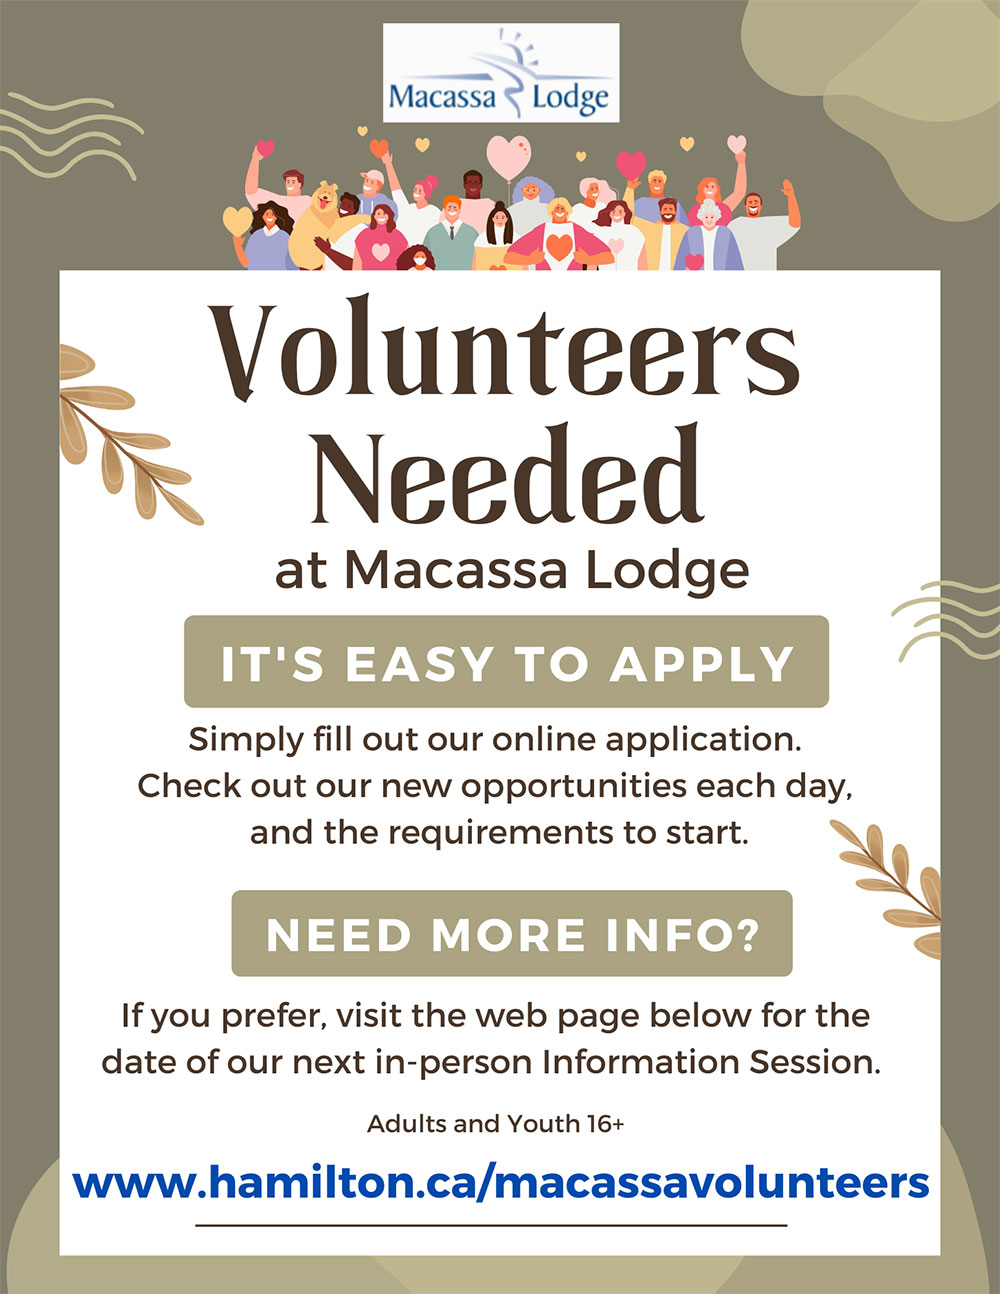 Volunteers needed at Macassa Lodge